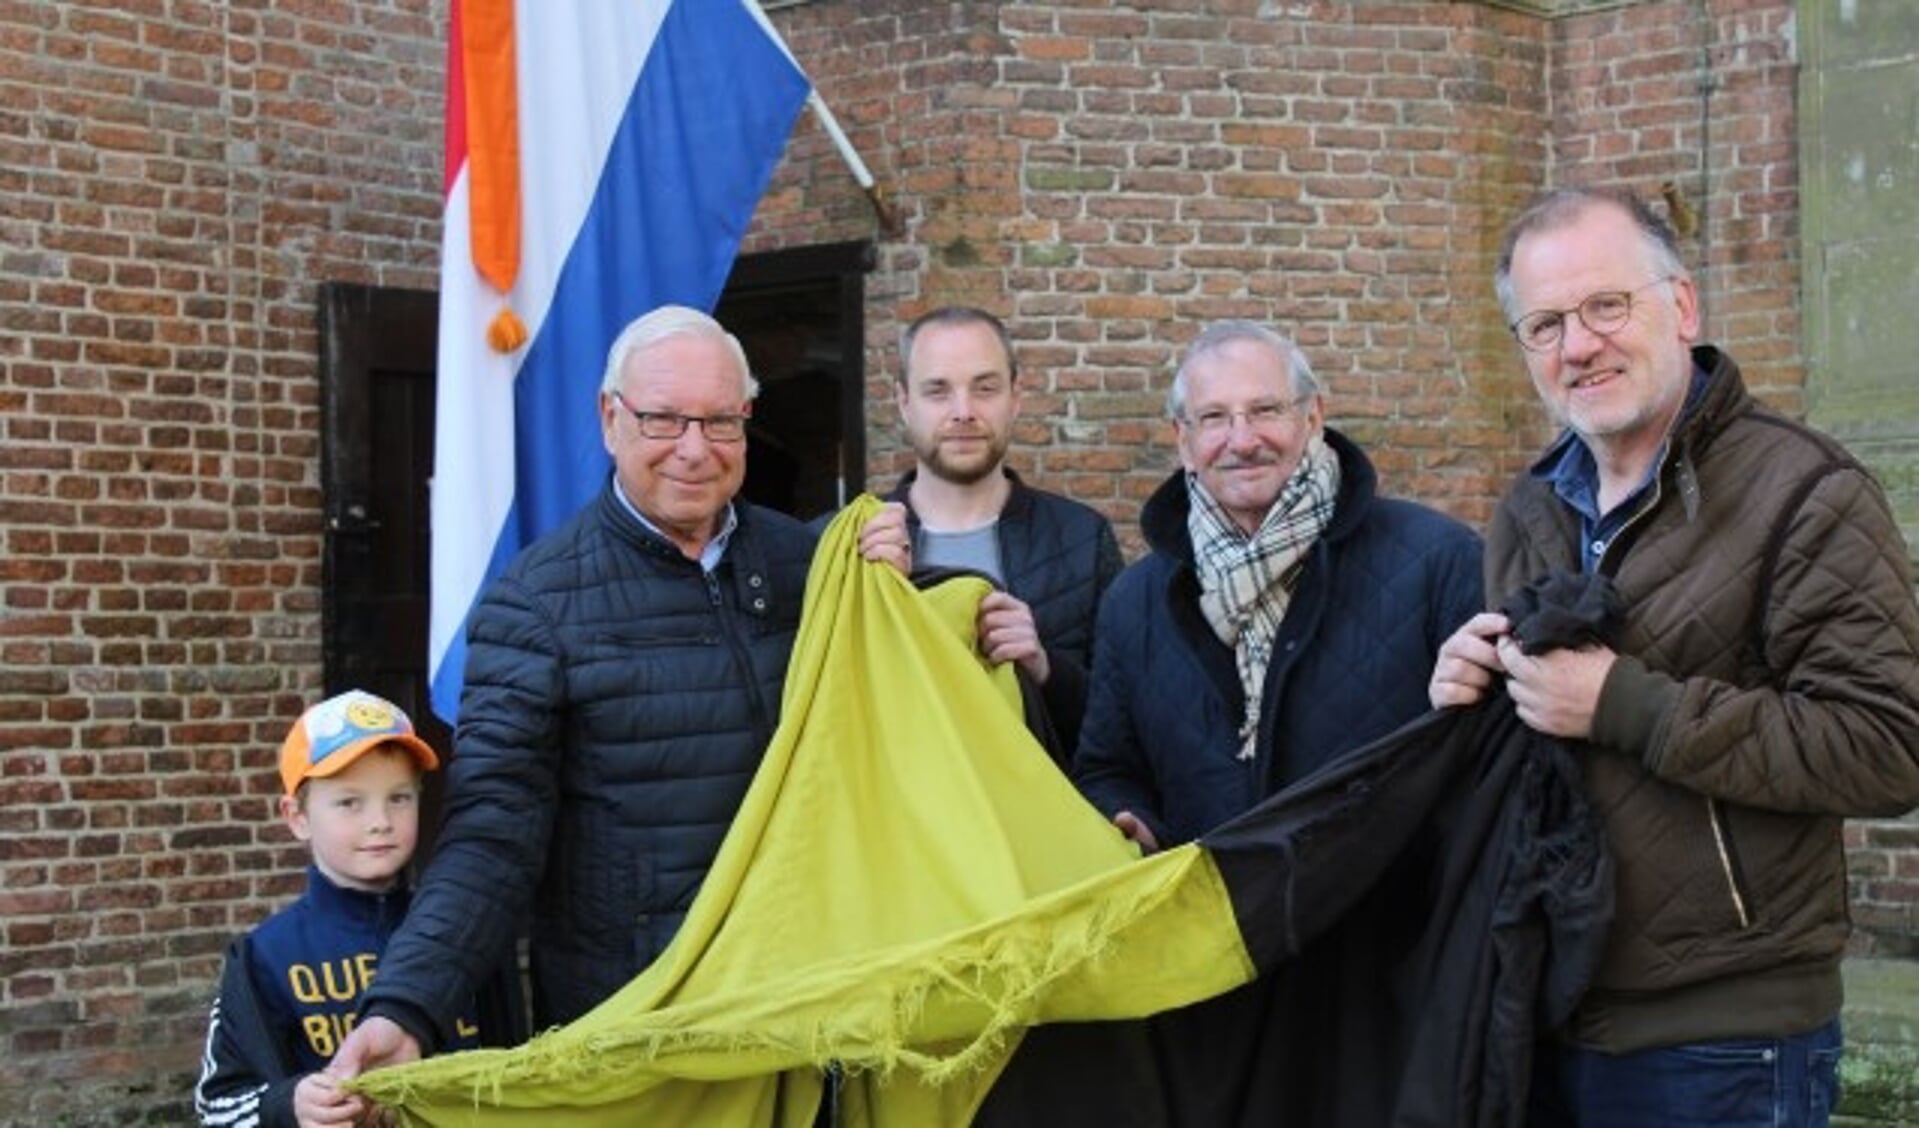 Nico Beekman, geflankeerd door zijn kleinzoon en zoon Marijn, met Hans Pillen en Bart Rietveld streken de - verbleekte -
 IJsselsteinse vlag om plaats te maken voor de Nederlands driekleur. (Foto: Lysette Verwegen)